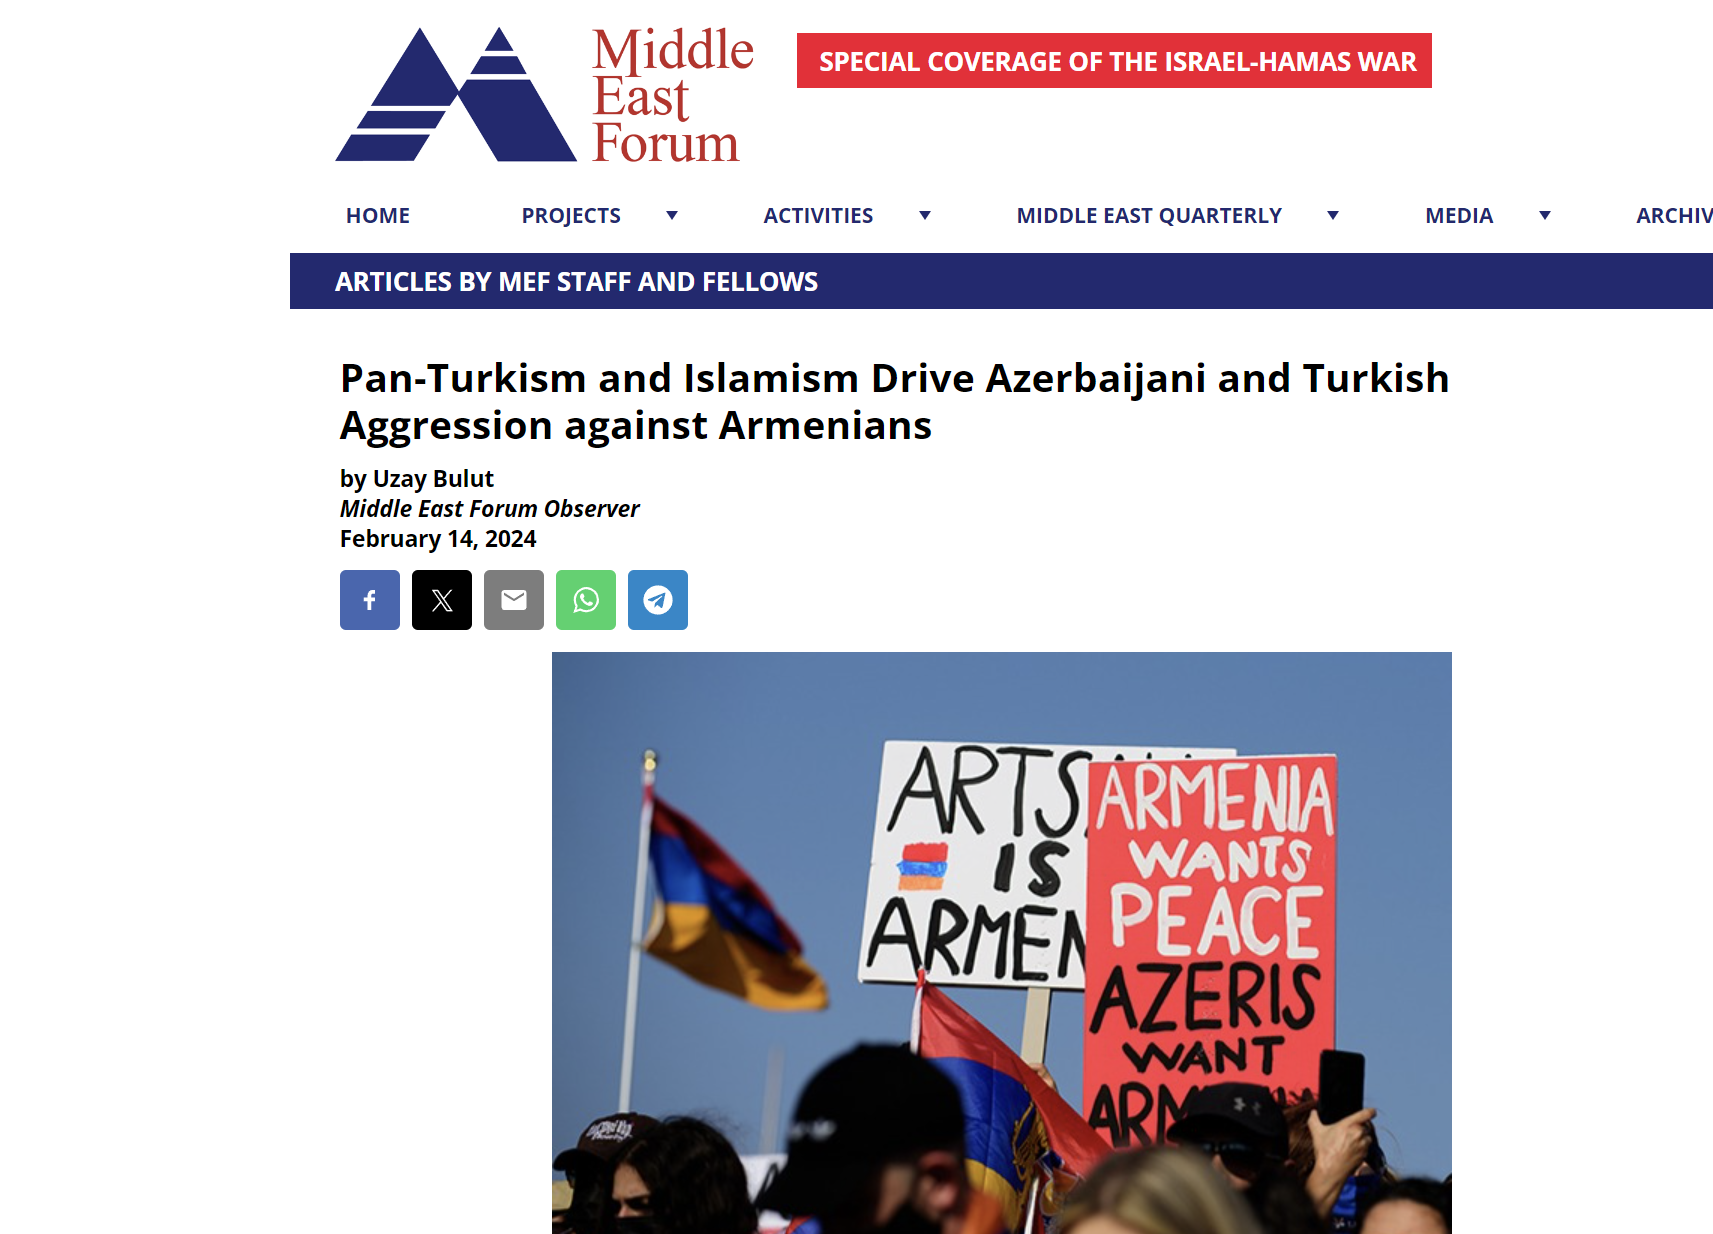 Ουζάι Μπουλούτ στο Middle East Forum: Ο παντουρκισμός και ο ισλαμισμός οδηγούν την επιθετικότητα του Αζερμπαϊτζάν και της Τουρκίας κατά των Αρμενίων